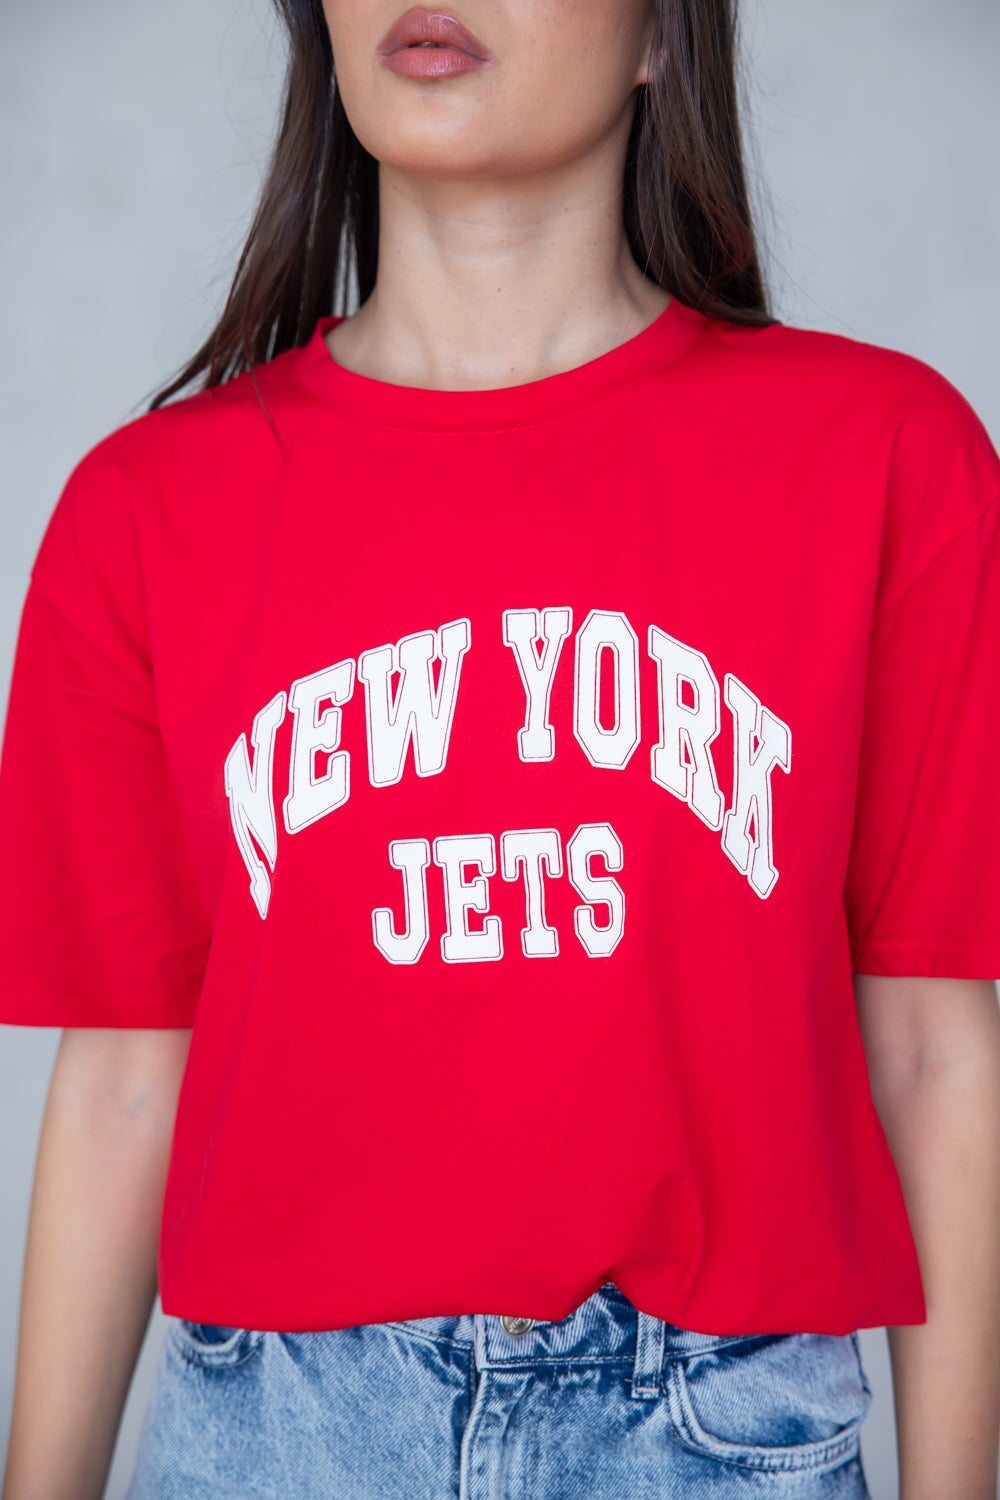 חולצת ניו-יורק TwentySix Red One Size 